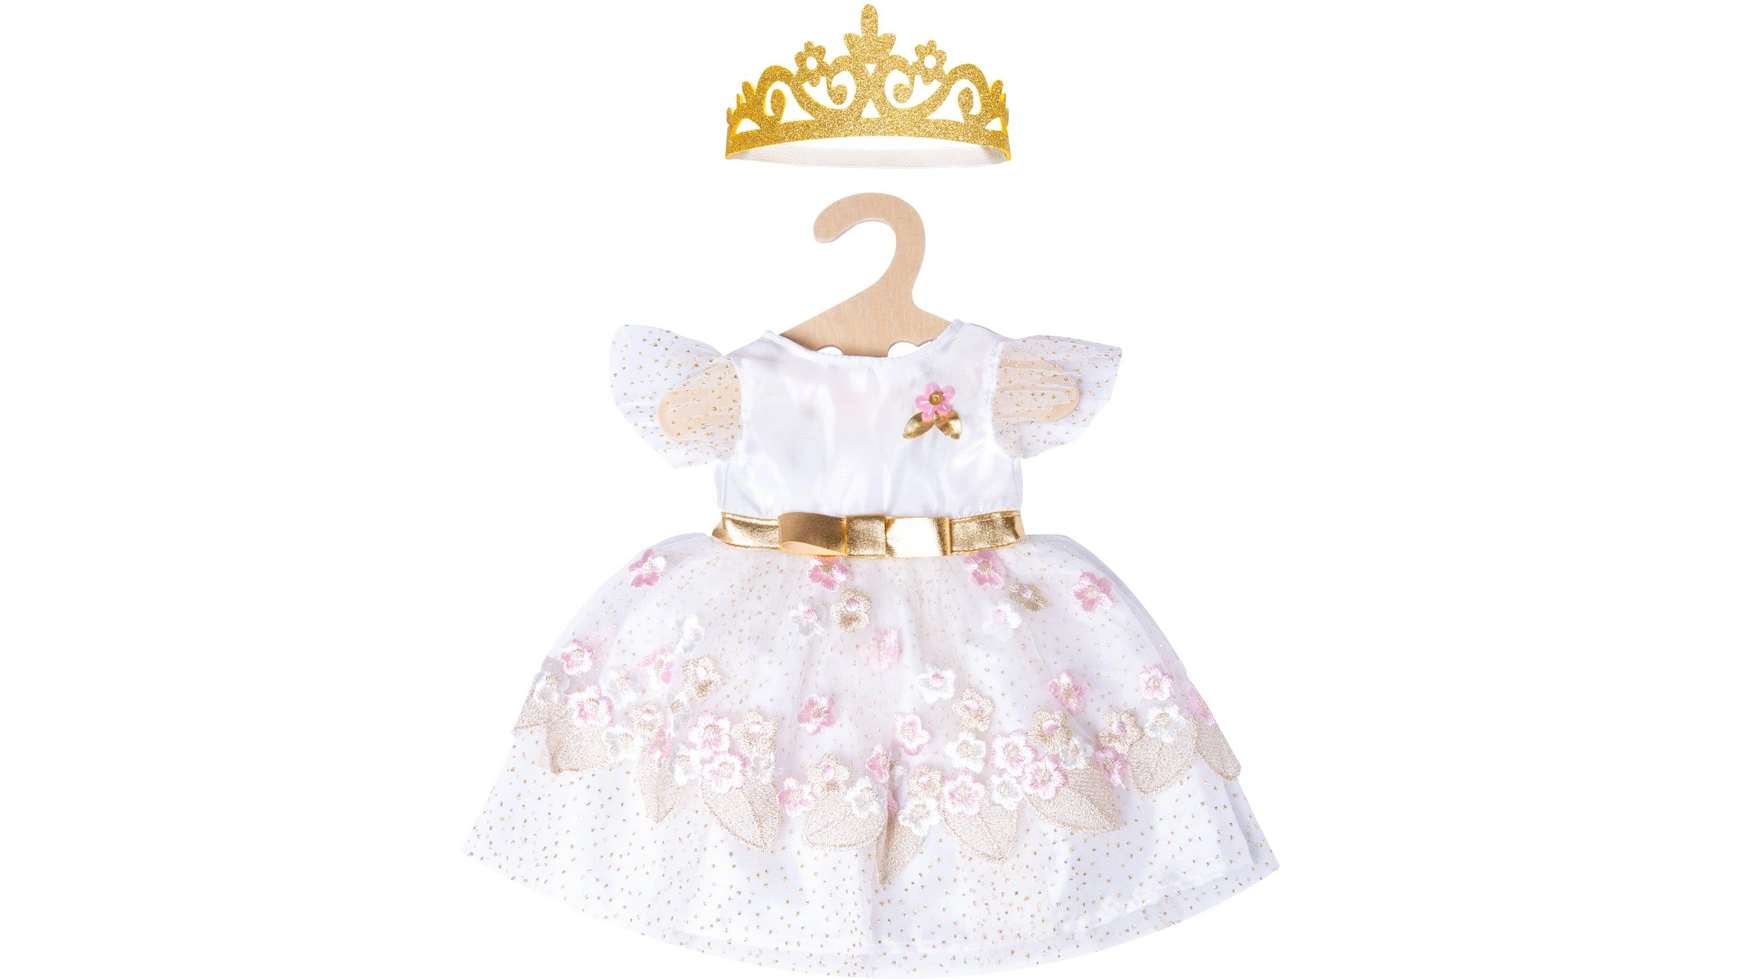 Платье принцессы вишневого цвета с золотой короной, размер 35-45см Heless кукольный домик дворец красавицы феи сказочный фэнтази le toy van